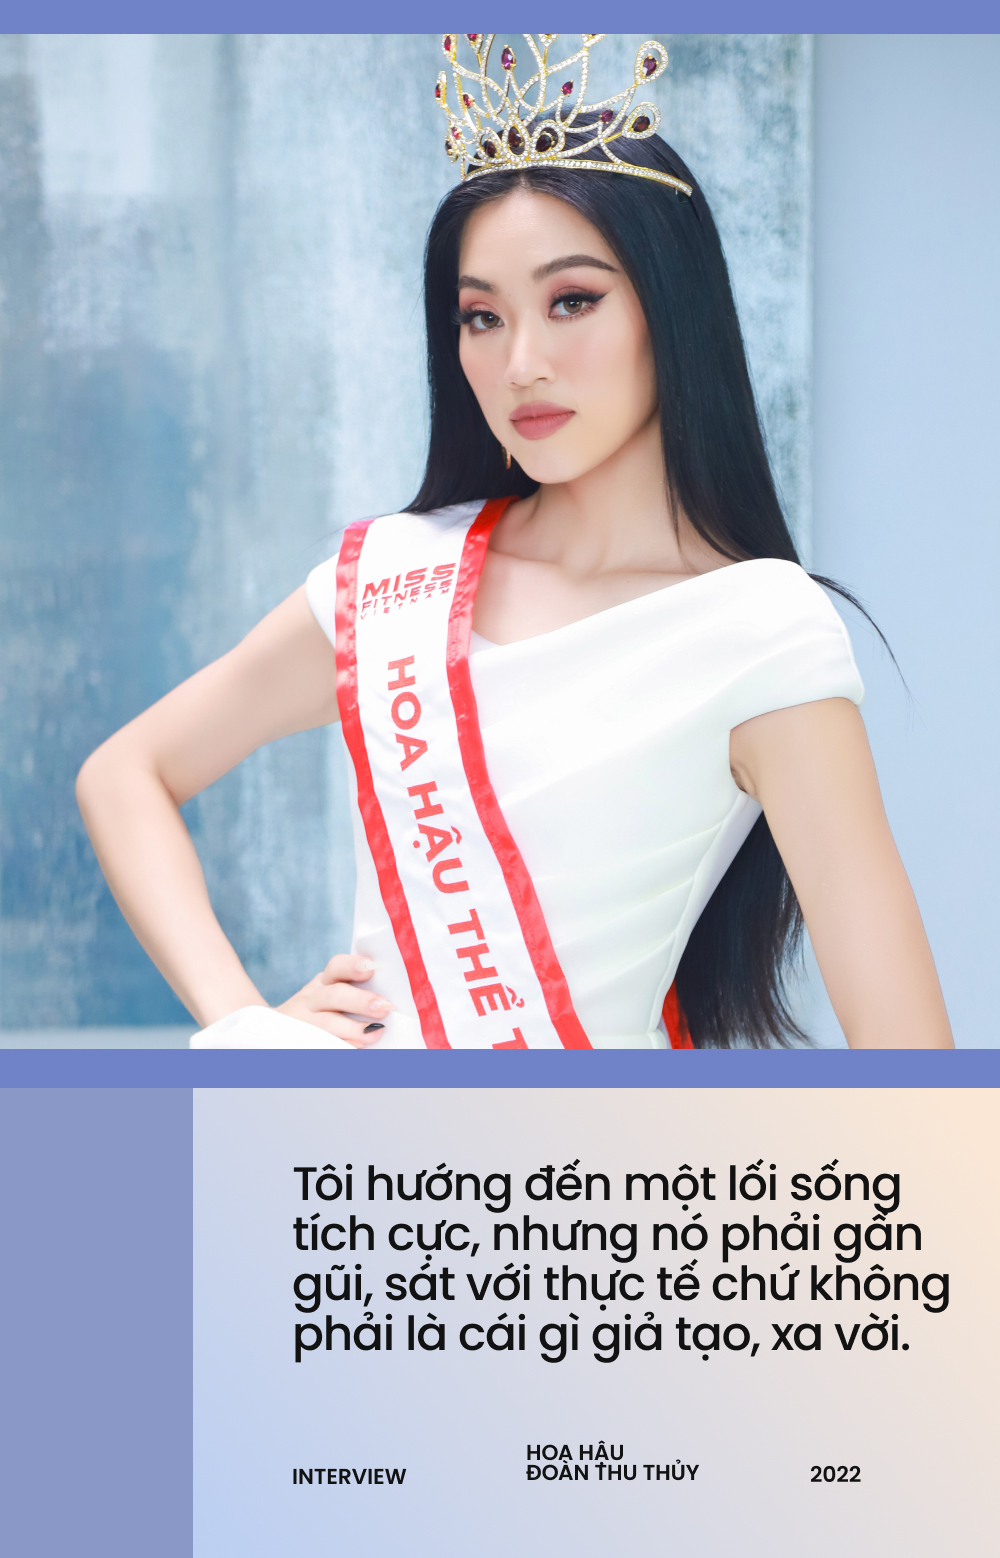 Đoàn Thu Thủy - Hoa hậu Thể thao Việt Nam: Tôi cảm nhận được sức nặng của vương miện, lùm xùm chất kích thích không thể làm ảnh hưởng  - Ảnh 4.